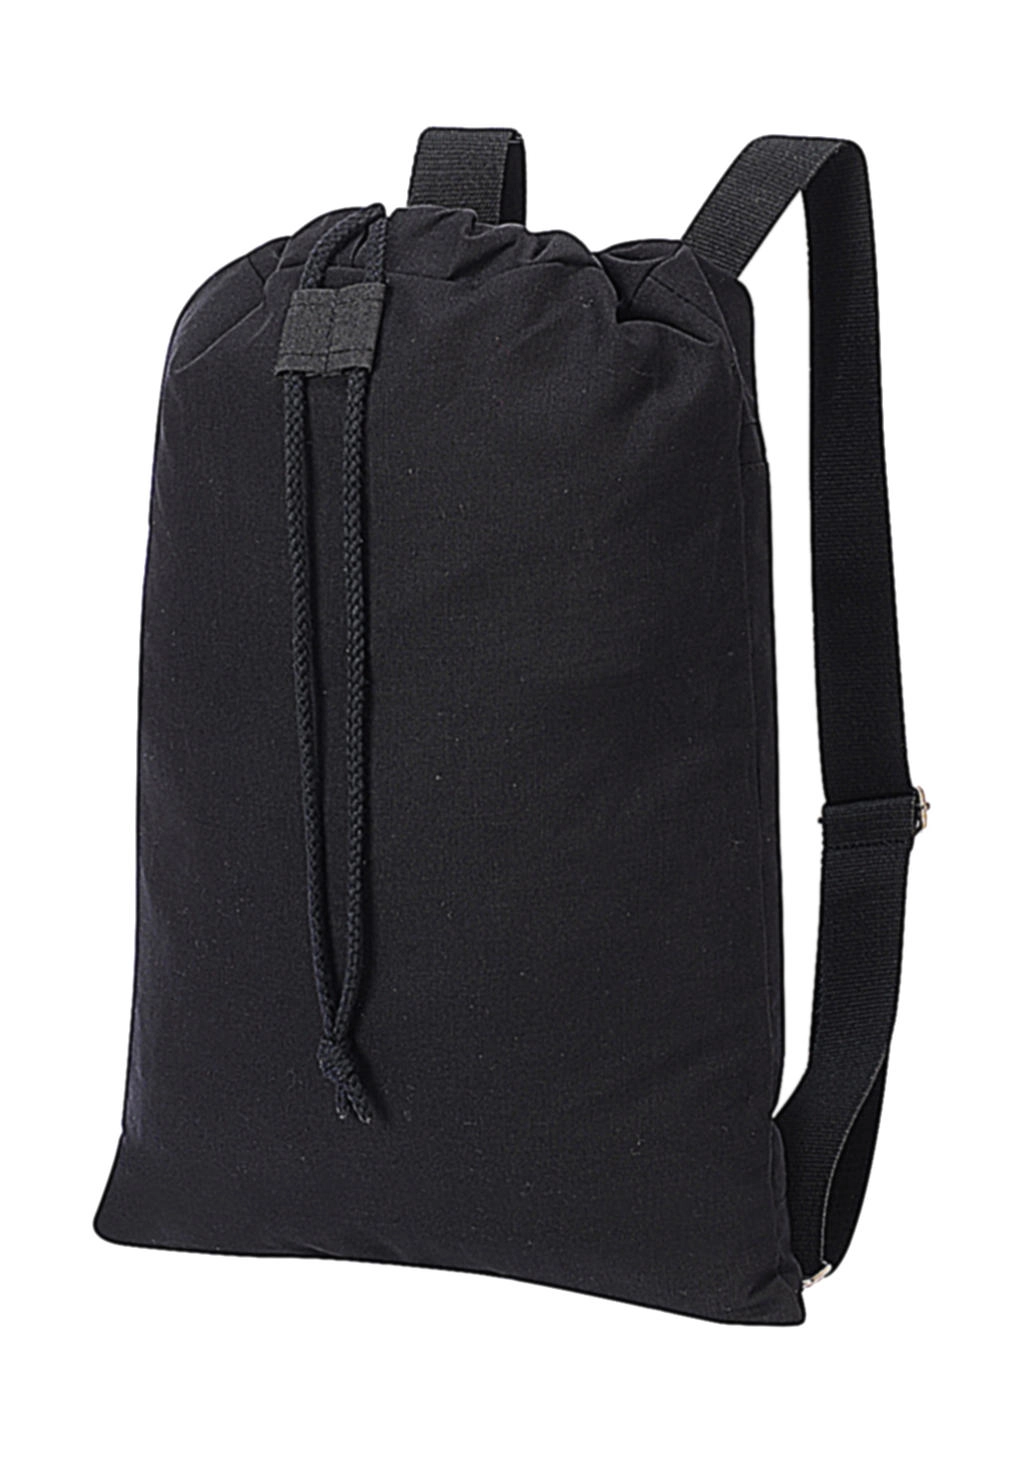 Sheffield Cotton Drawstring Backpack zum Besticken und Bedrucken in der Farbe Black Washed mit Ihren Logo, Schriftzug oder Motiv.